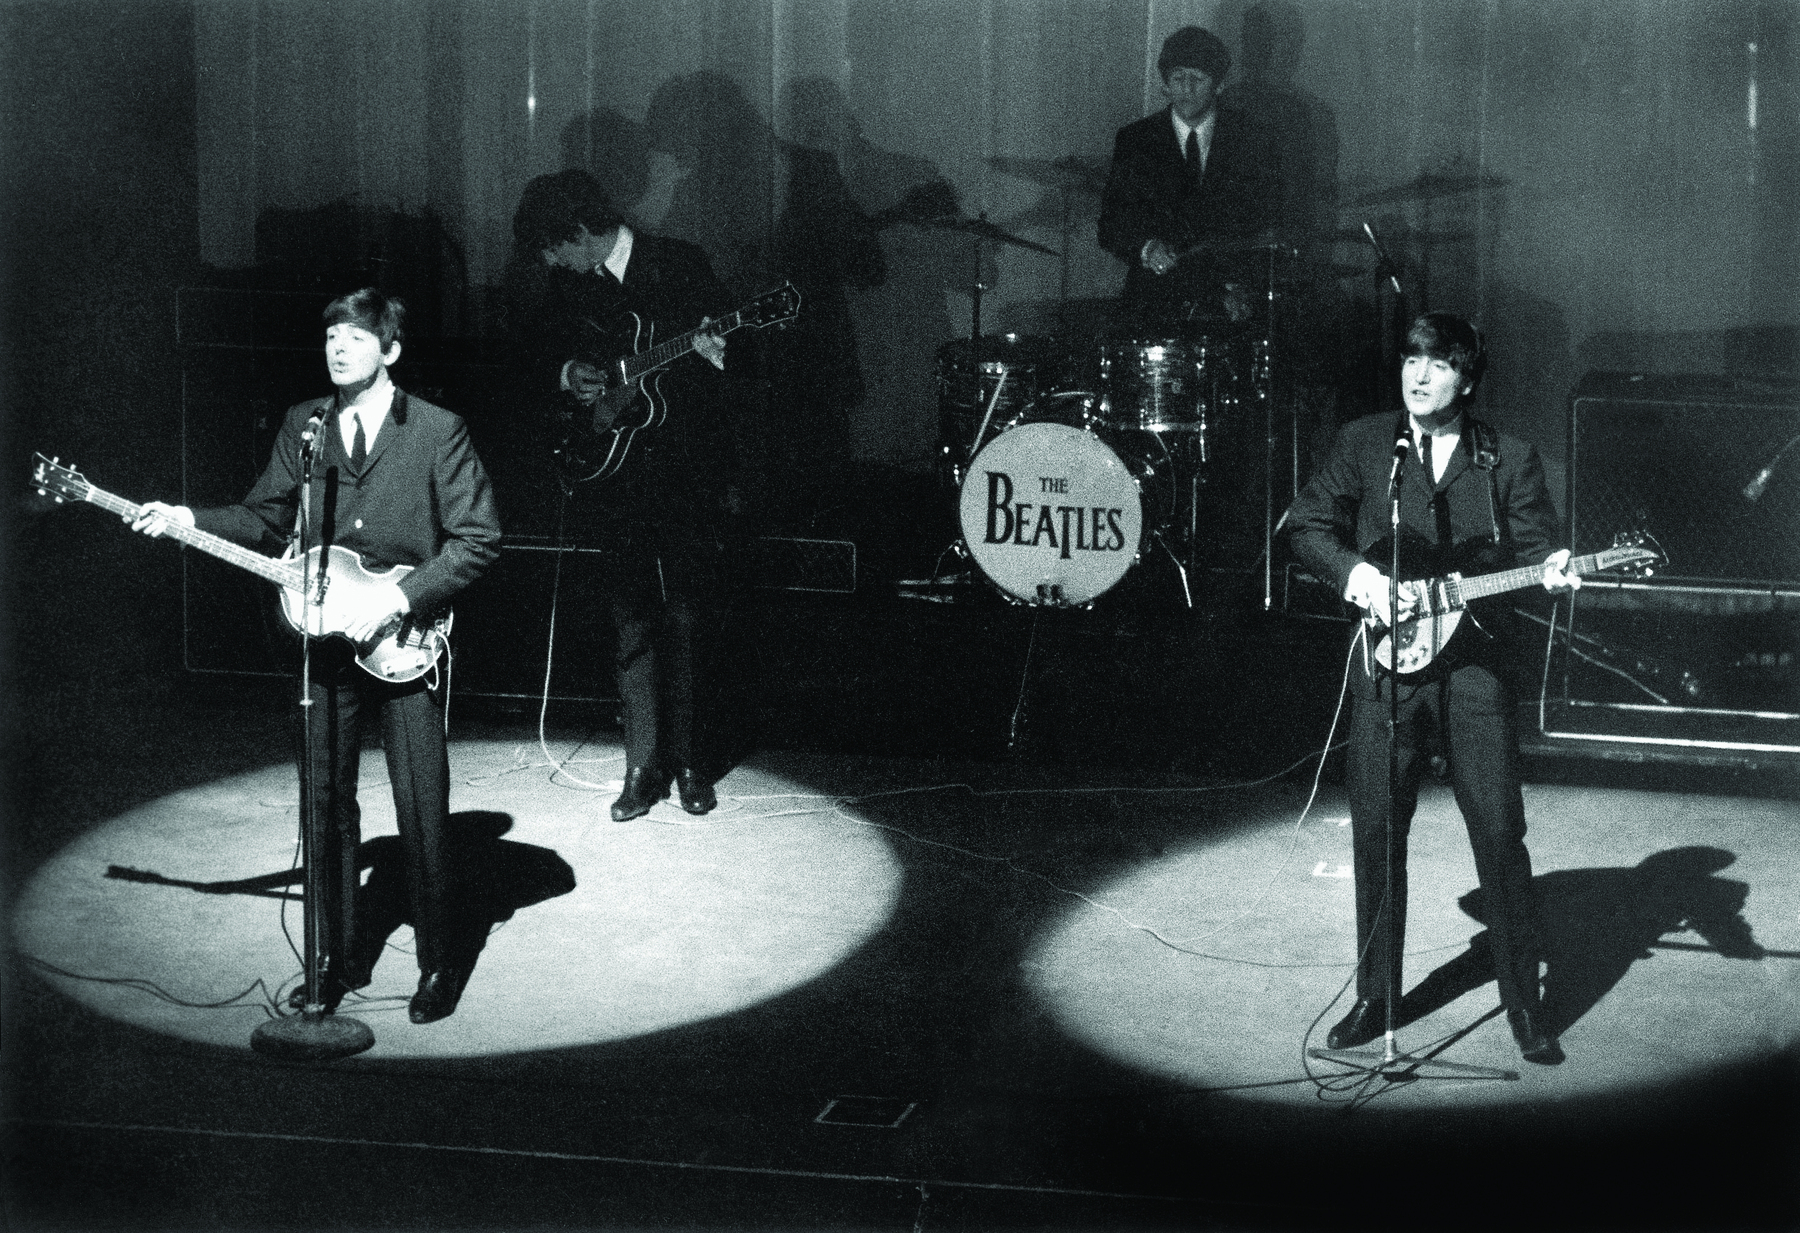 Fotografia em preto e branco. Show musical com quatro músicos no palco, todos usam cabelos curtos e vestem paletó e gravata. Os dois músicos em primeiro plano cantam e tocam. Ao fundo, no bumbo da bateria, há o logotipo da banda: “The Beatles”.